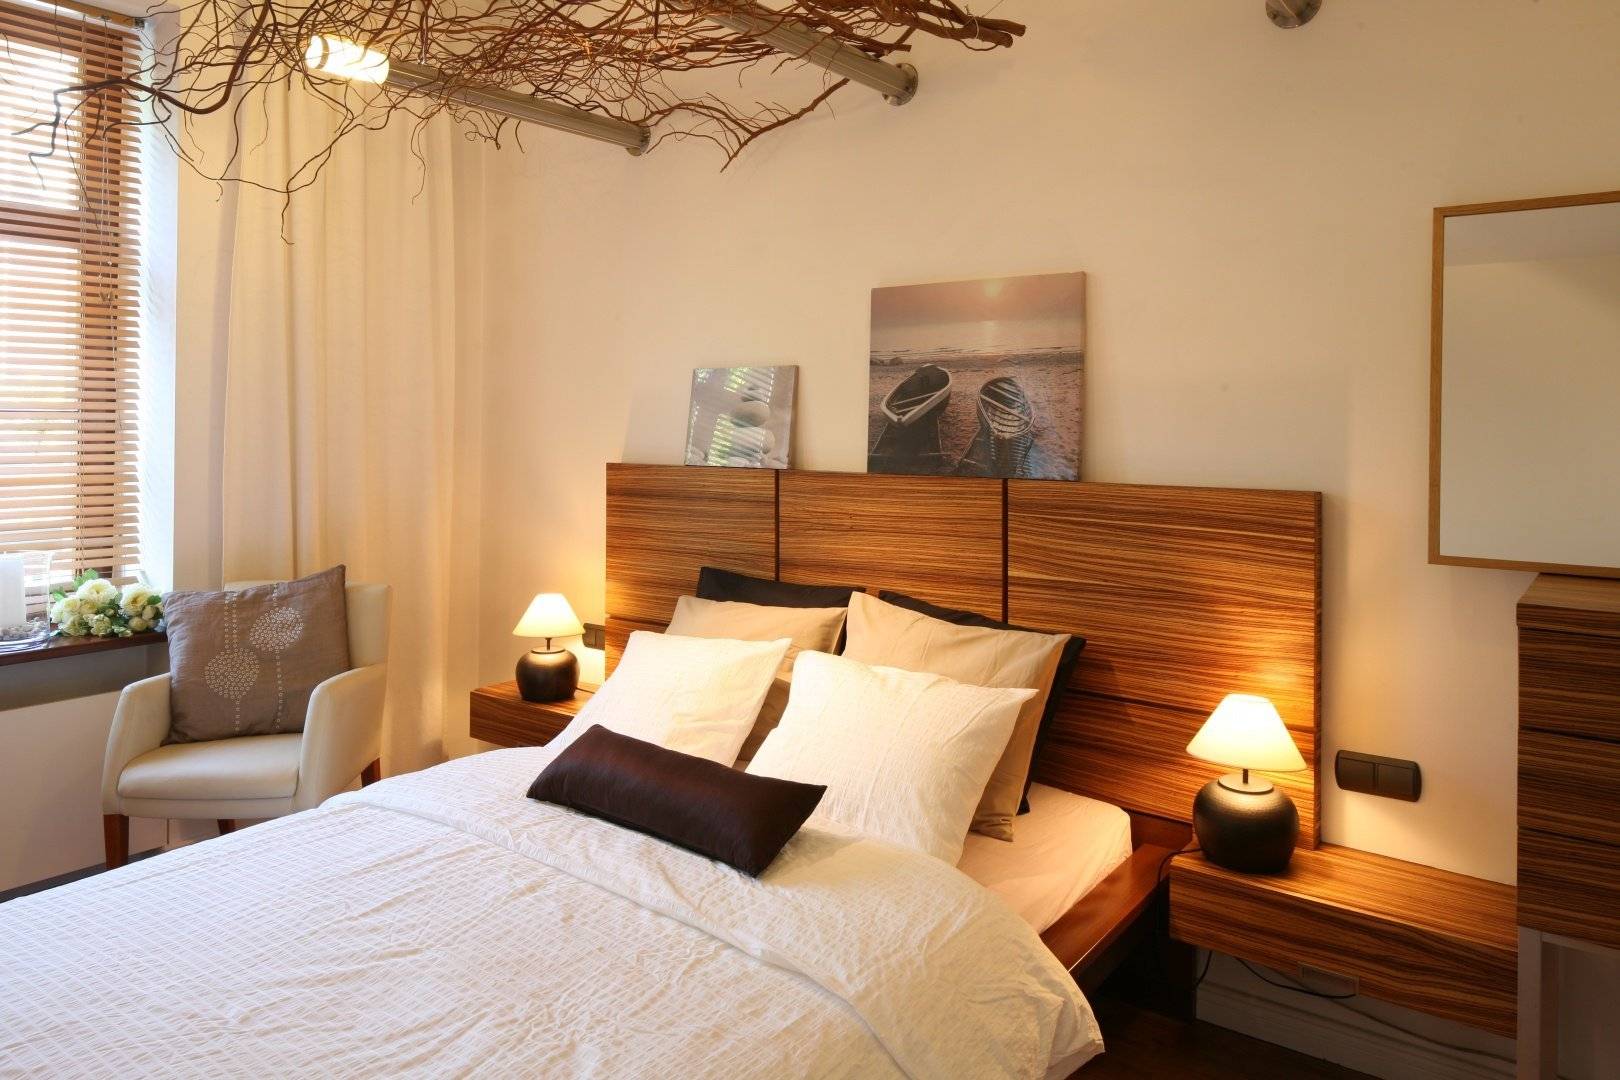 Спальня в светлых тонах: 25 готовых фото решений дизайн интерьера